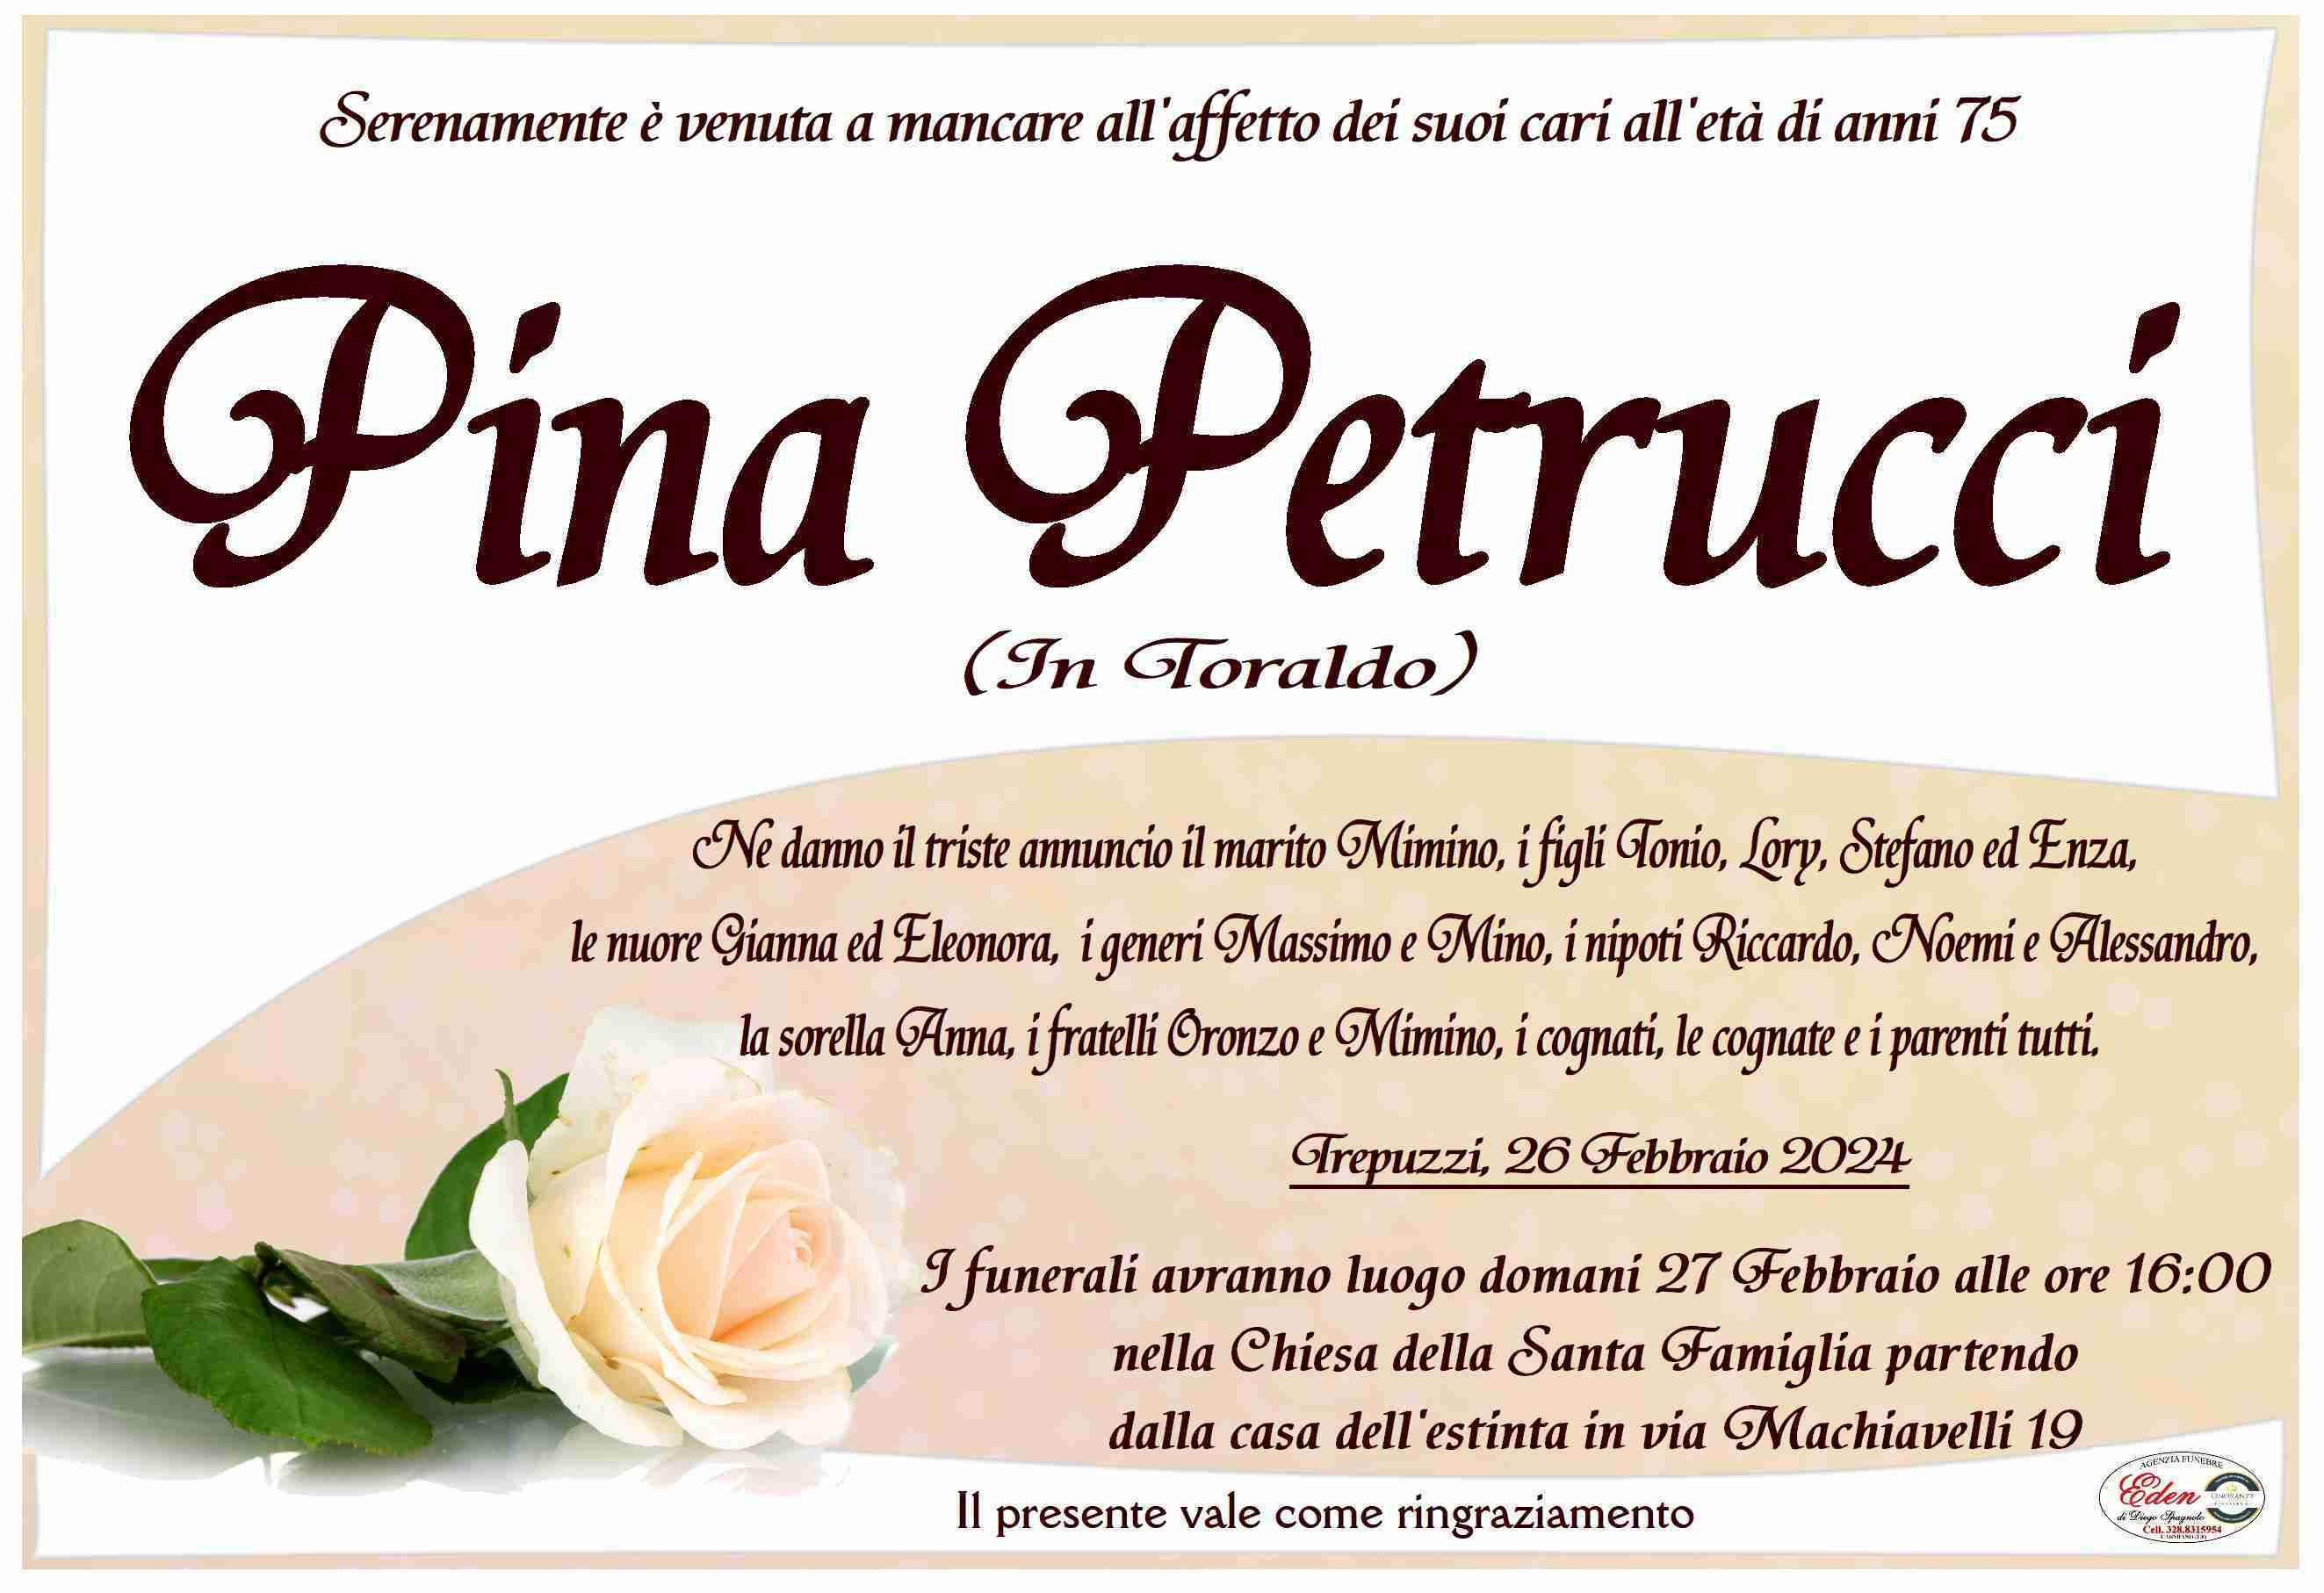 Pina Petrucci